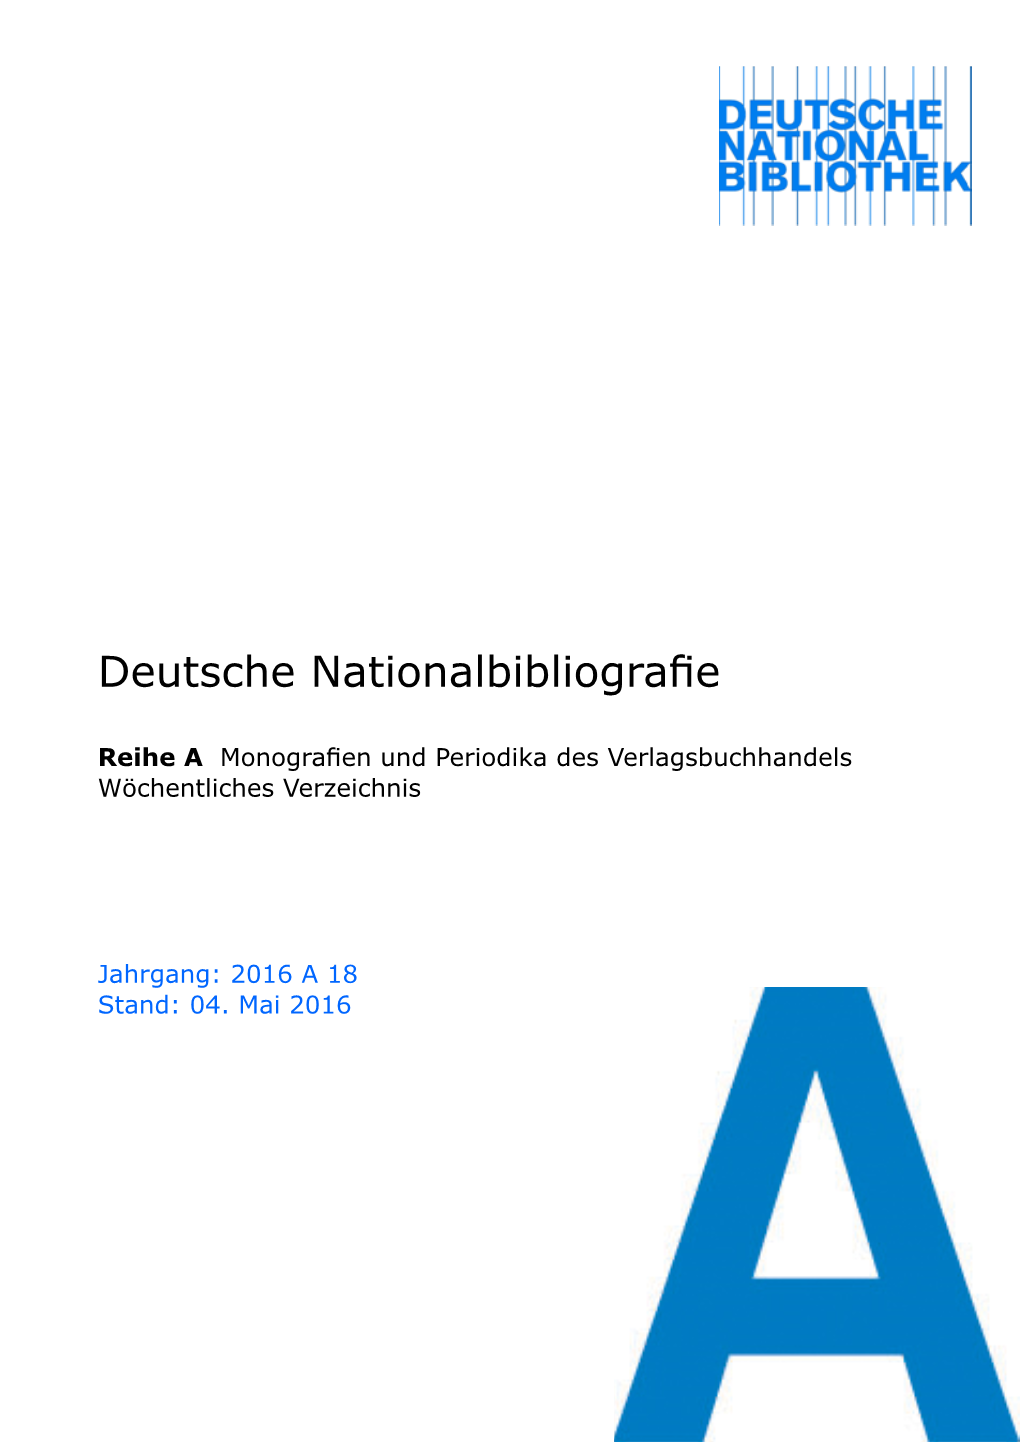 Deutsche Nationalbibliografie 2016 a 18